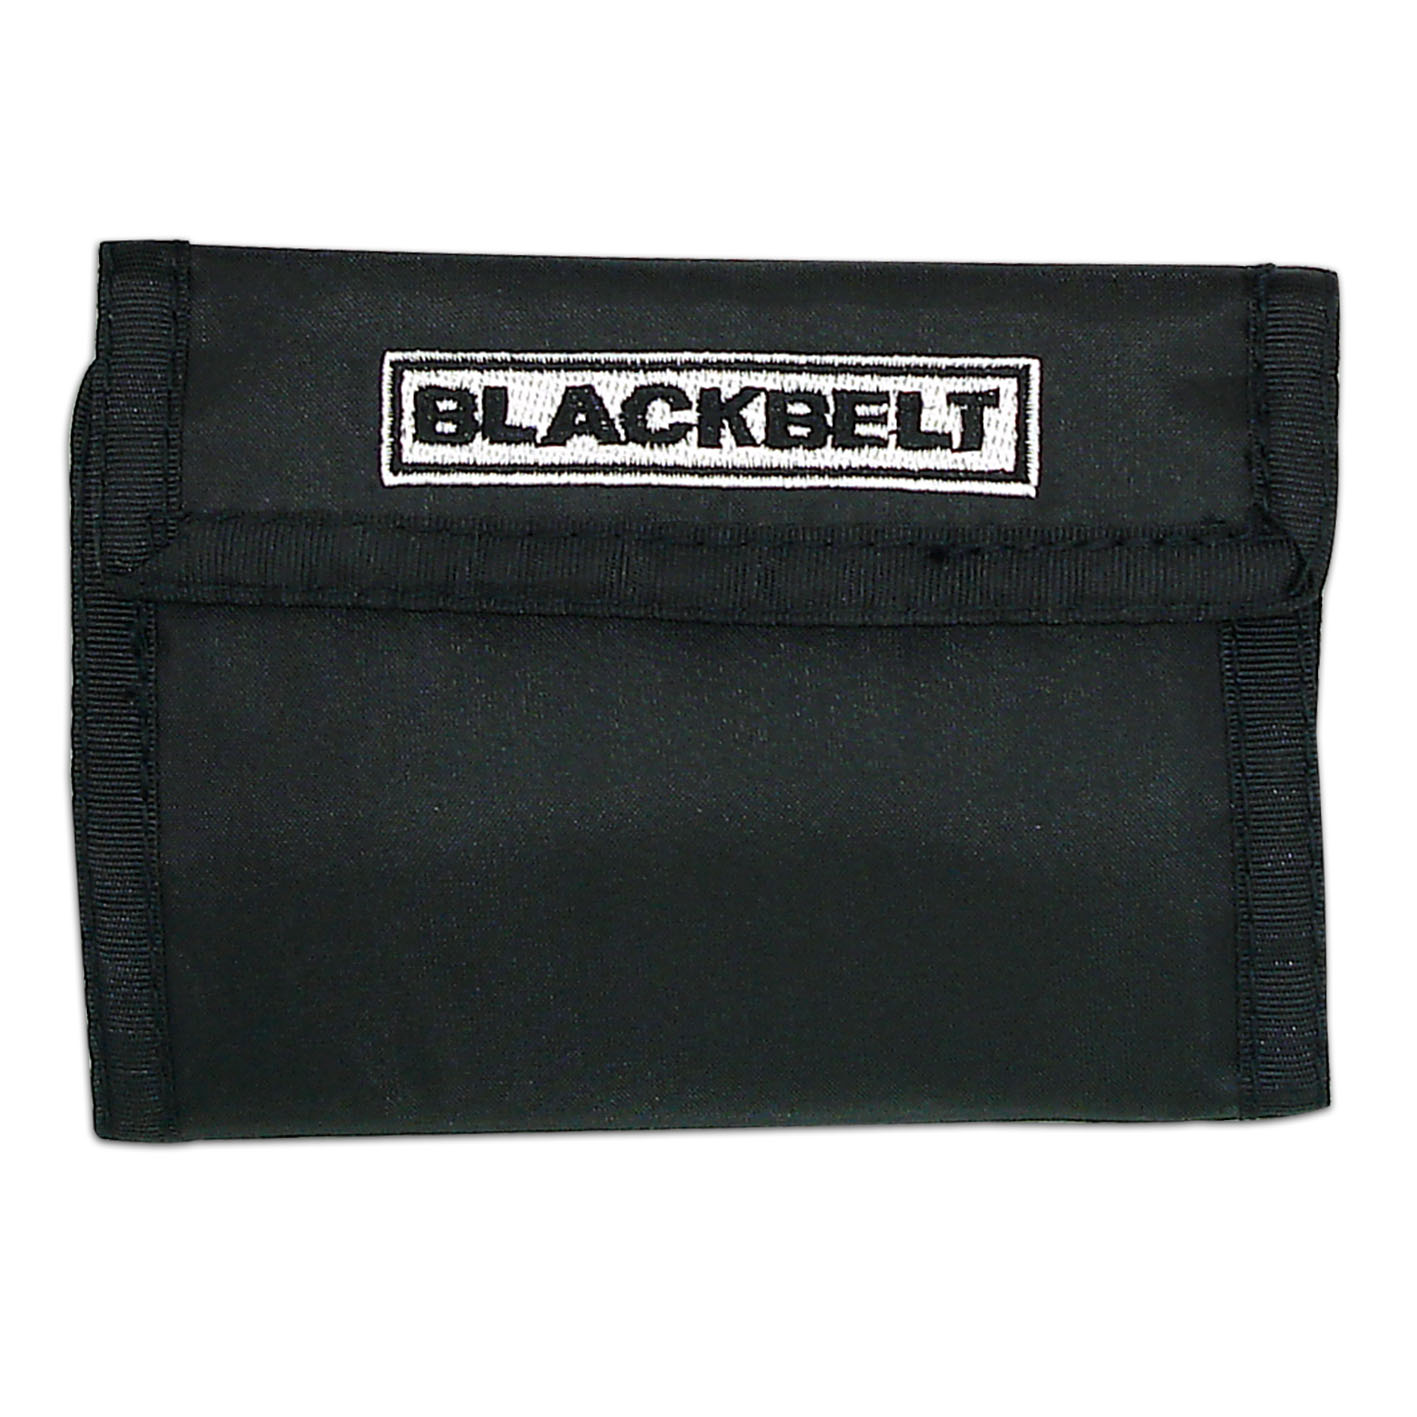 Martial Arts Black Belt Wallet - Click Image to Close